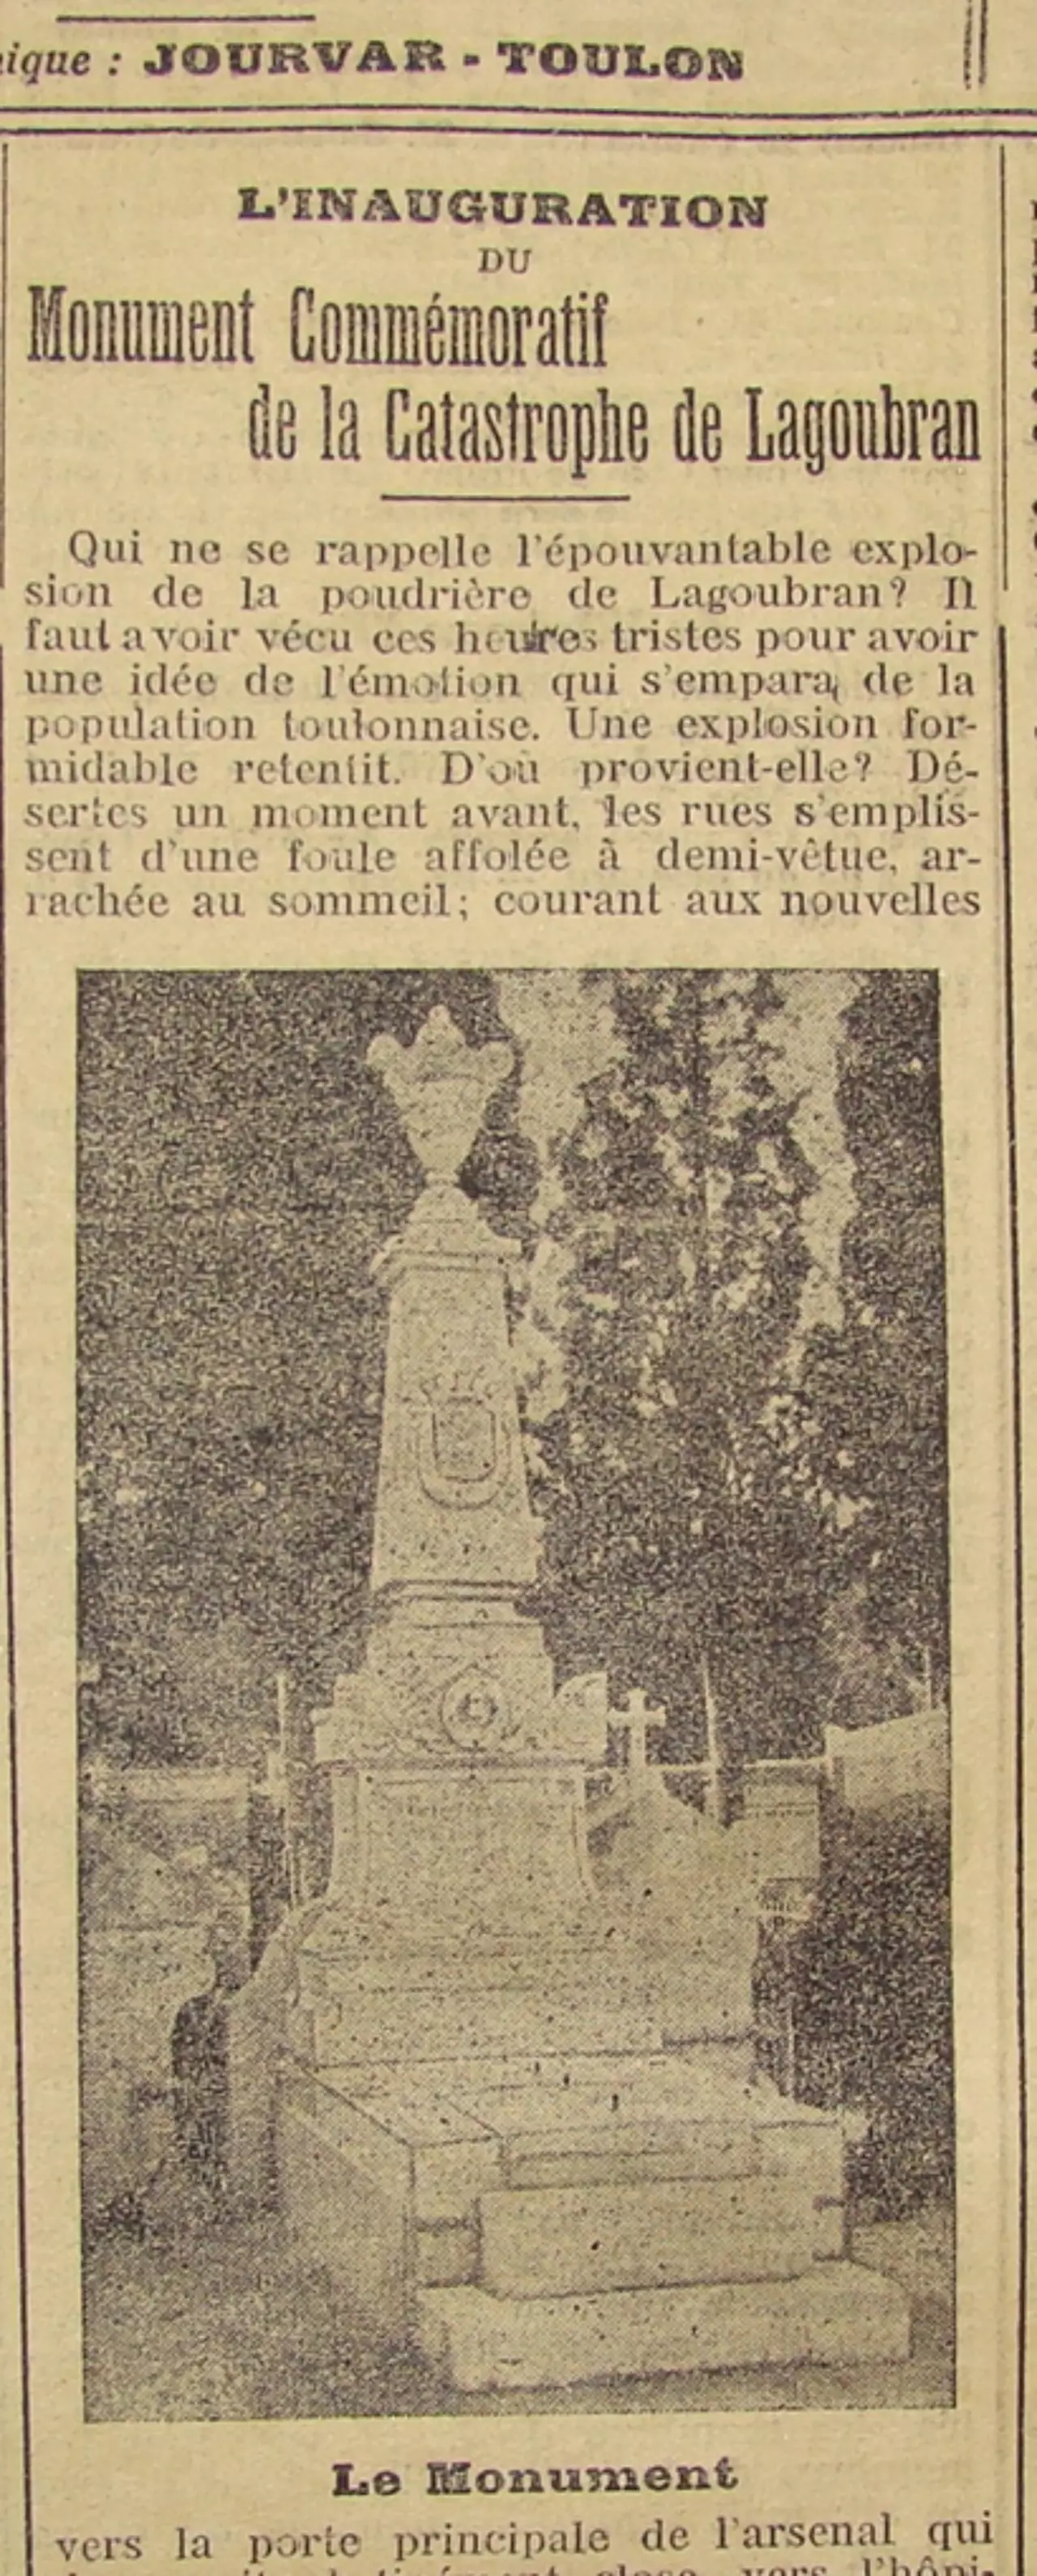 La photo du monument diffusée dans le Petit Var en 1911